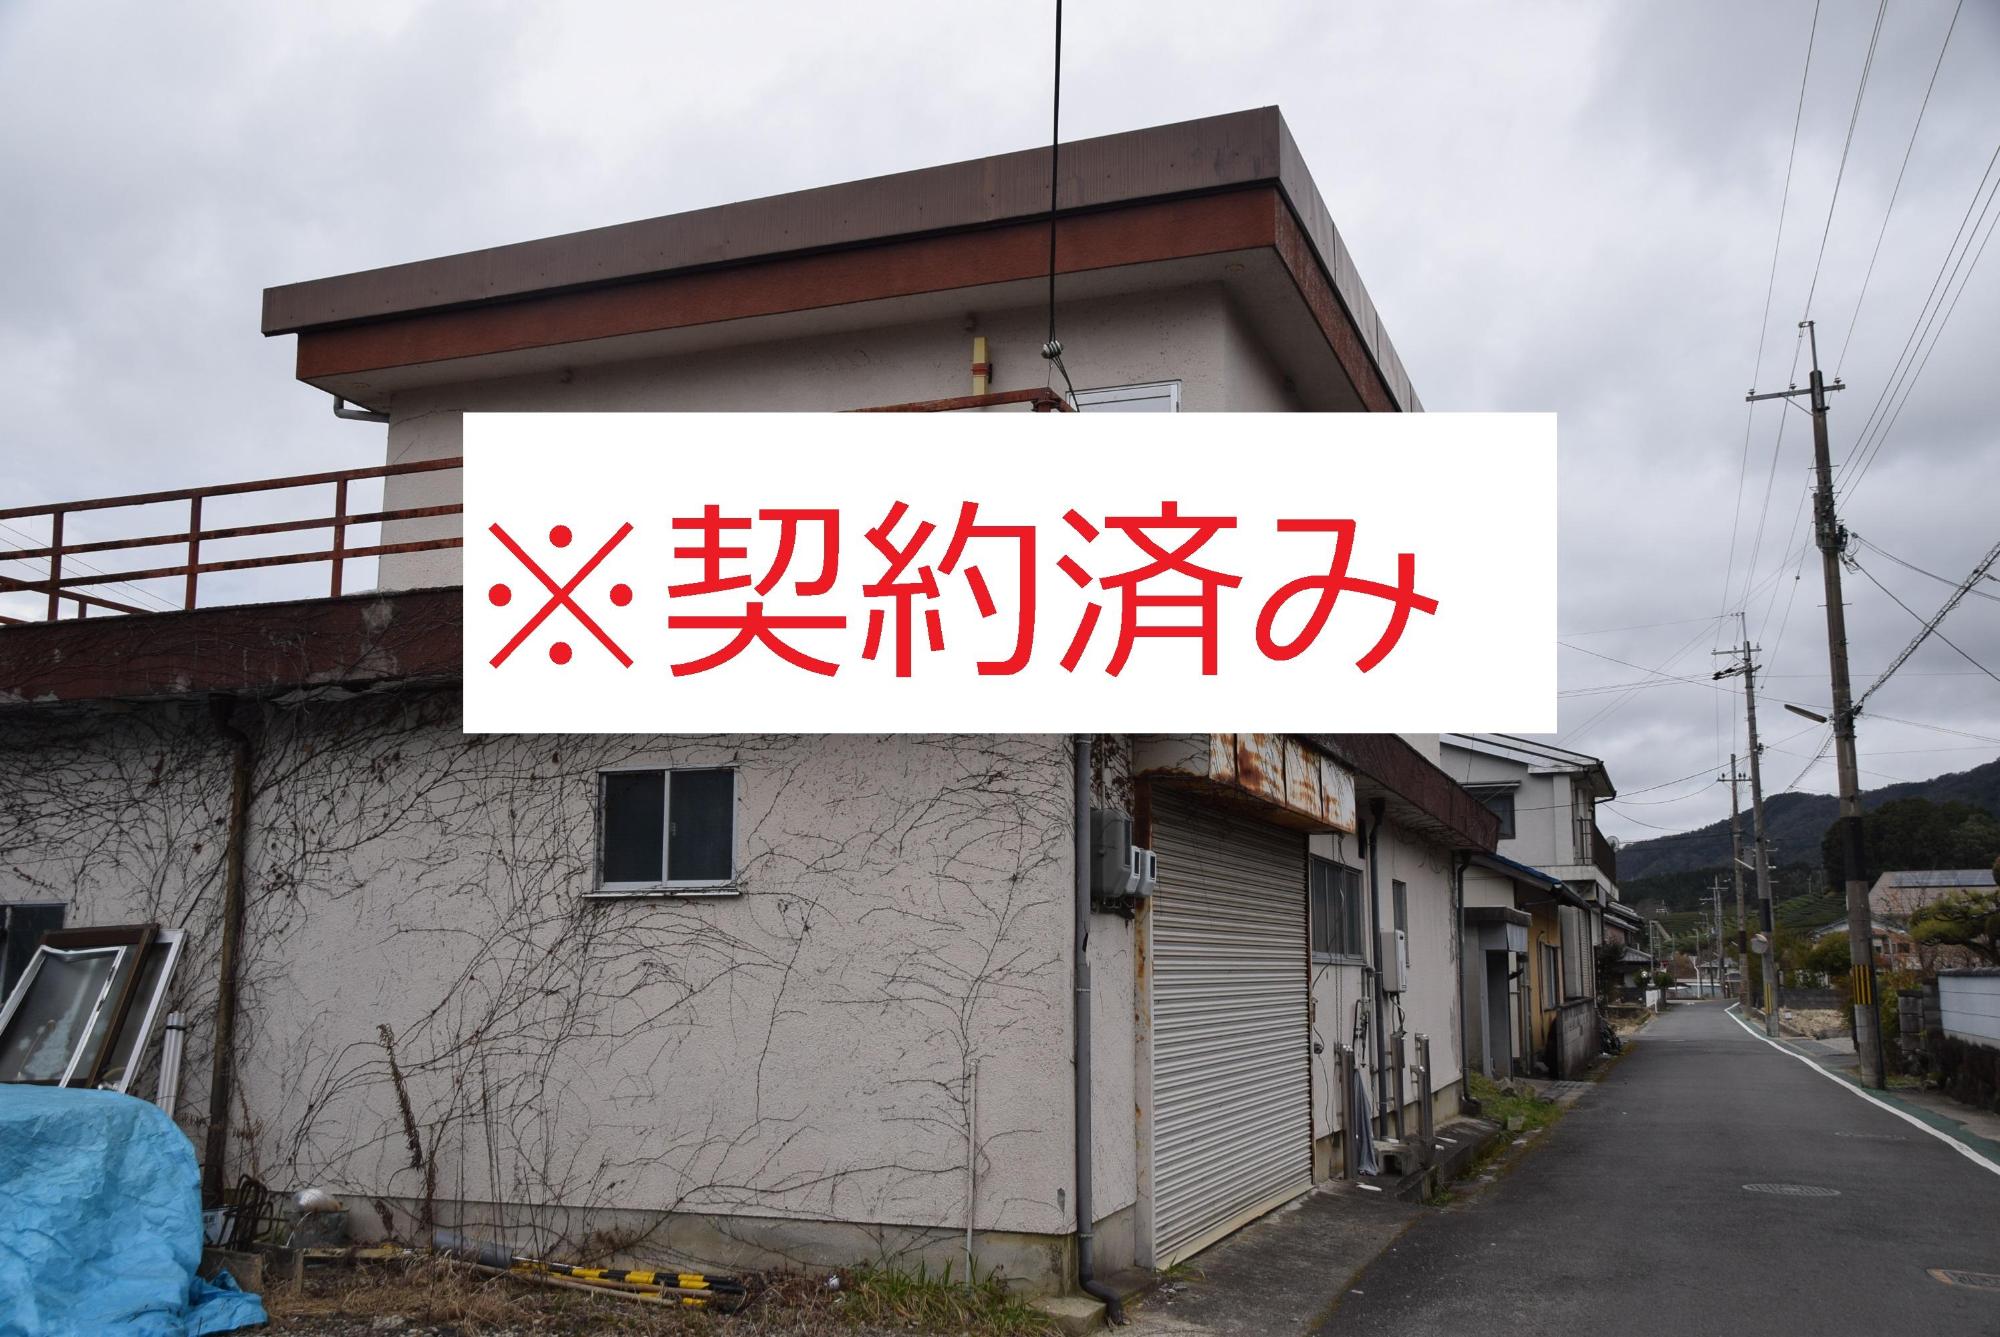 蔦が這った家の写真の中心に赤い文字で契約済みと記載されている写真